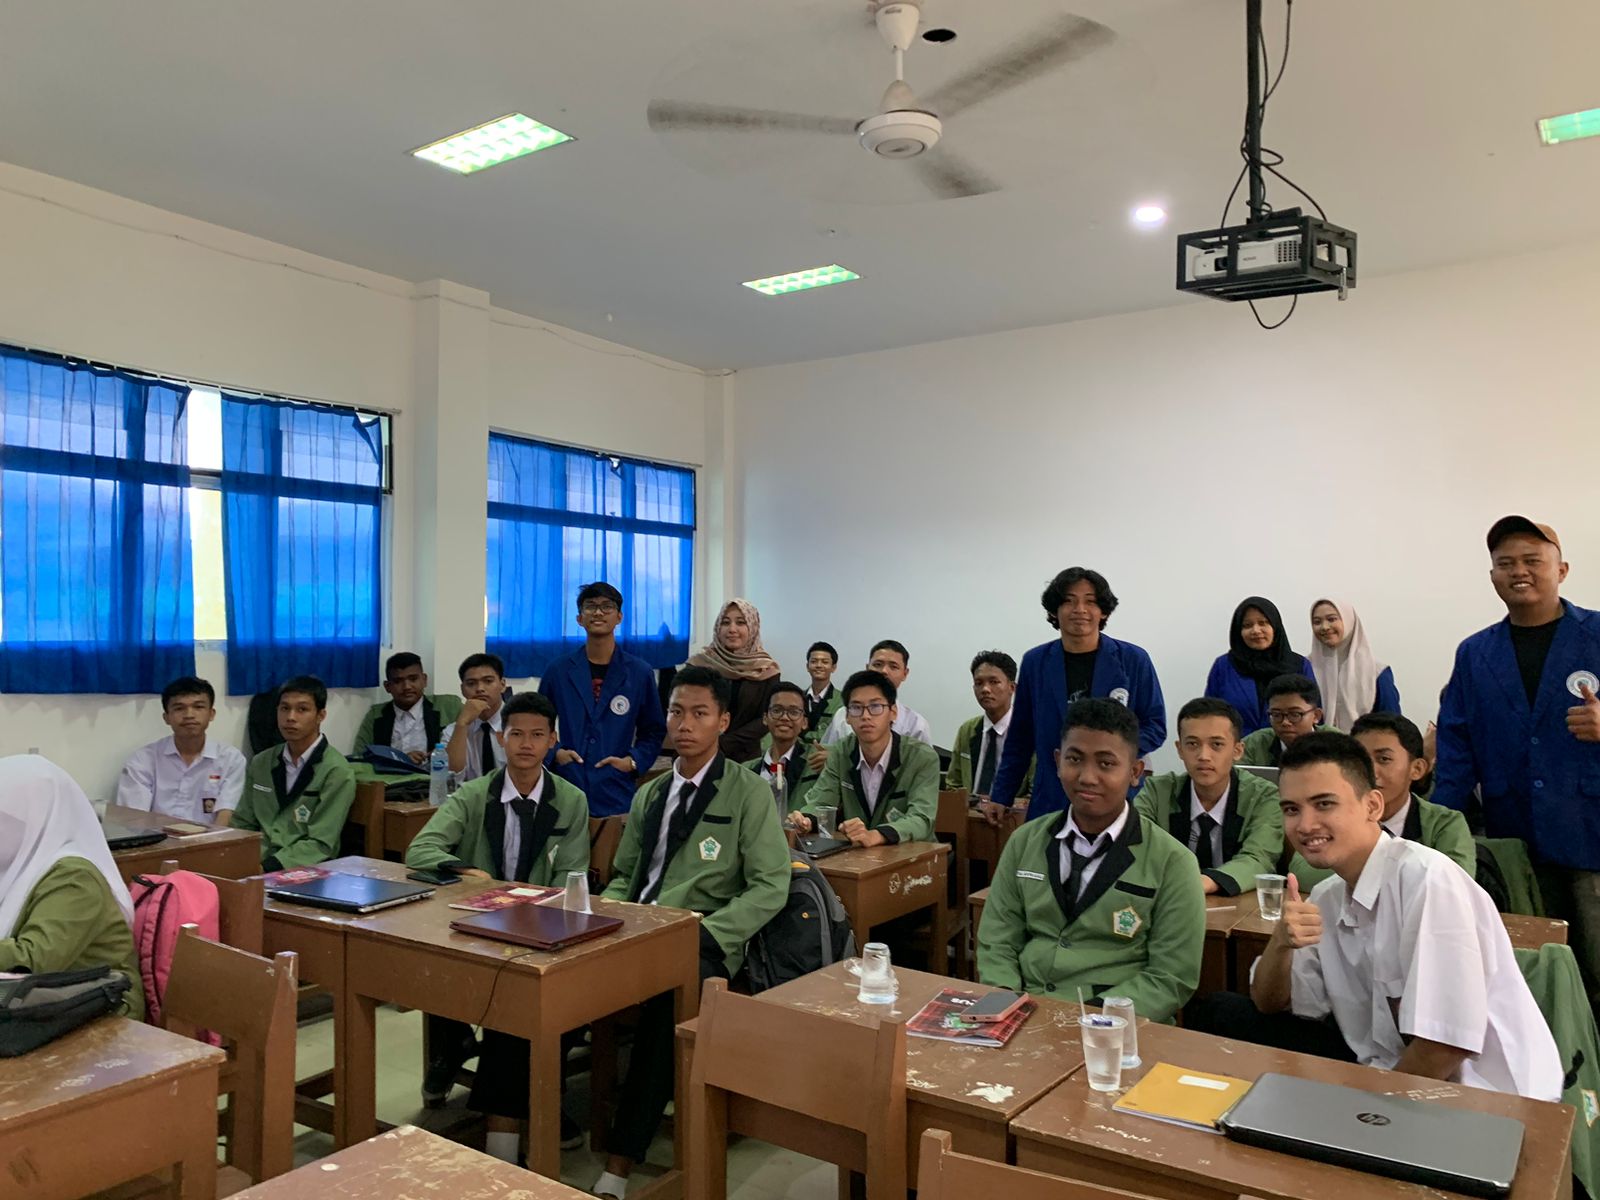 Kenalkan Perkembangan IT Pada Dunia Bisnis, Mahasiswa Prodi Sistem Informasi ITEBA mengadakan Kegiatan Knowlegde Transfer di SMK Ibnu Sina Batam